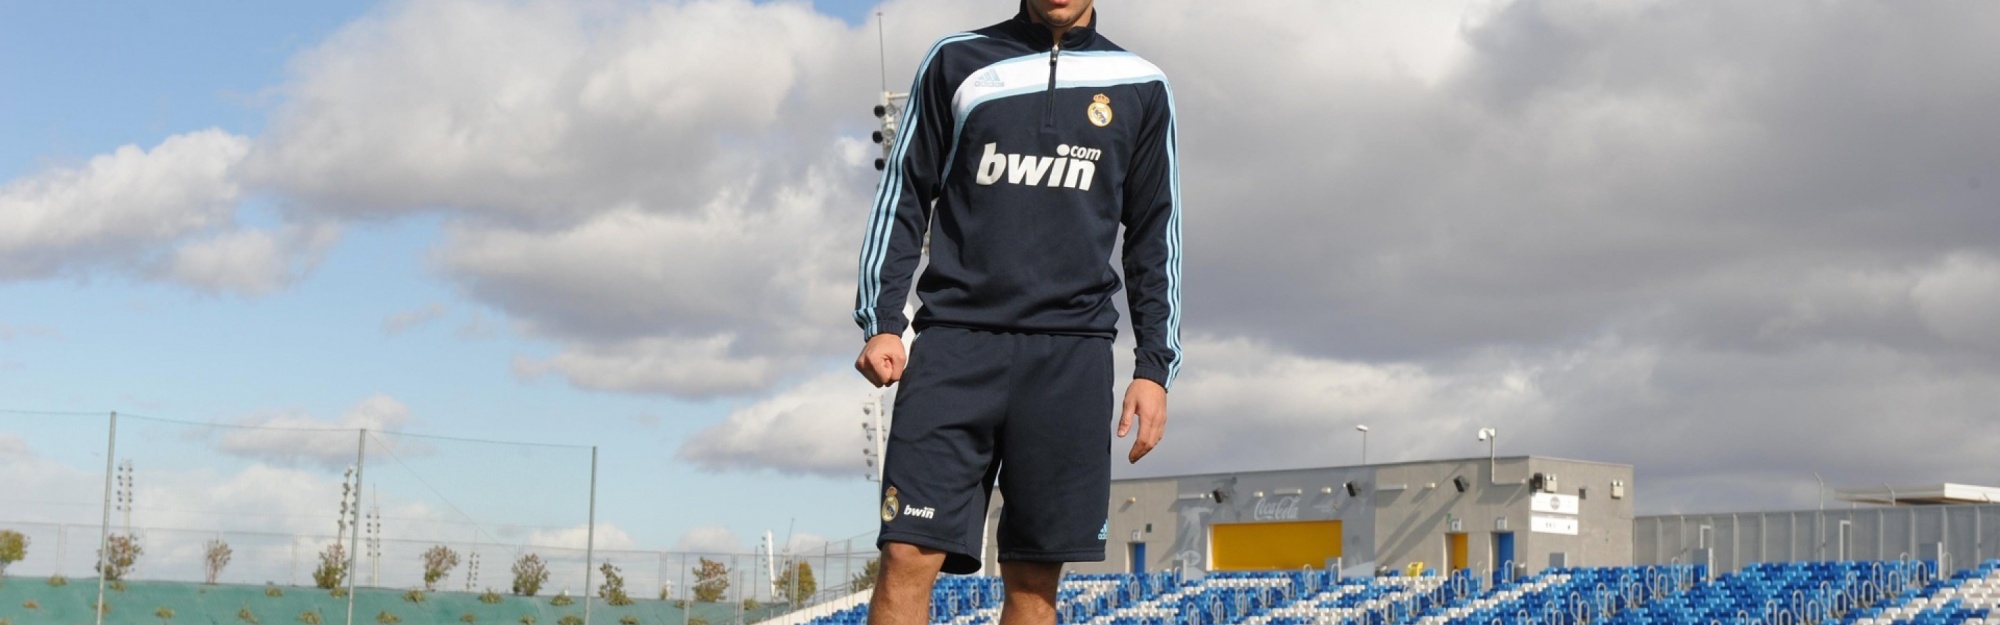 Karim Benzema - French Footballer